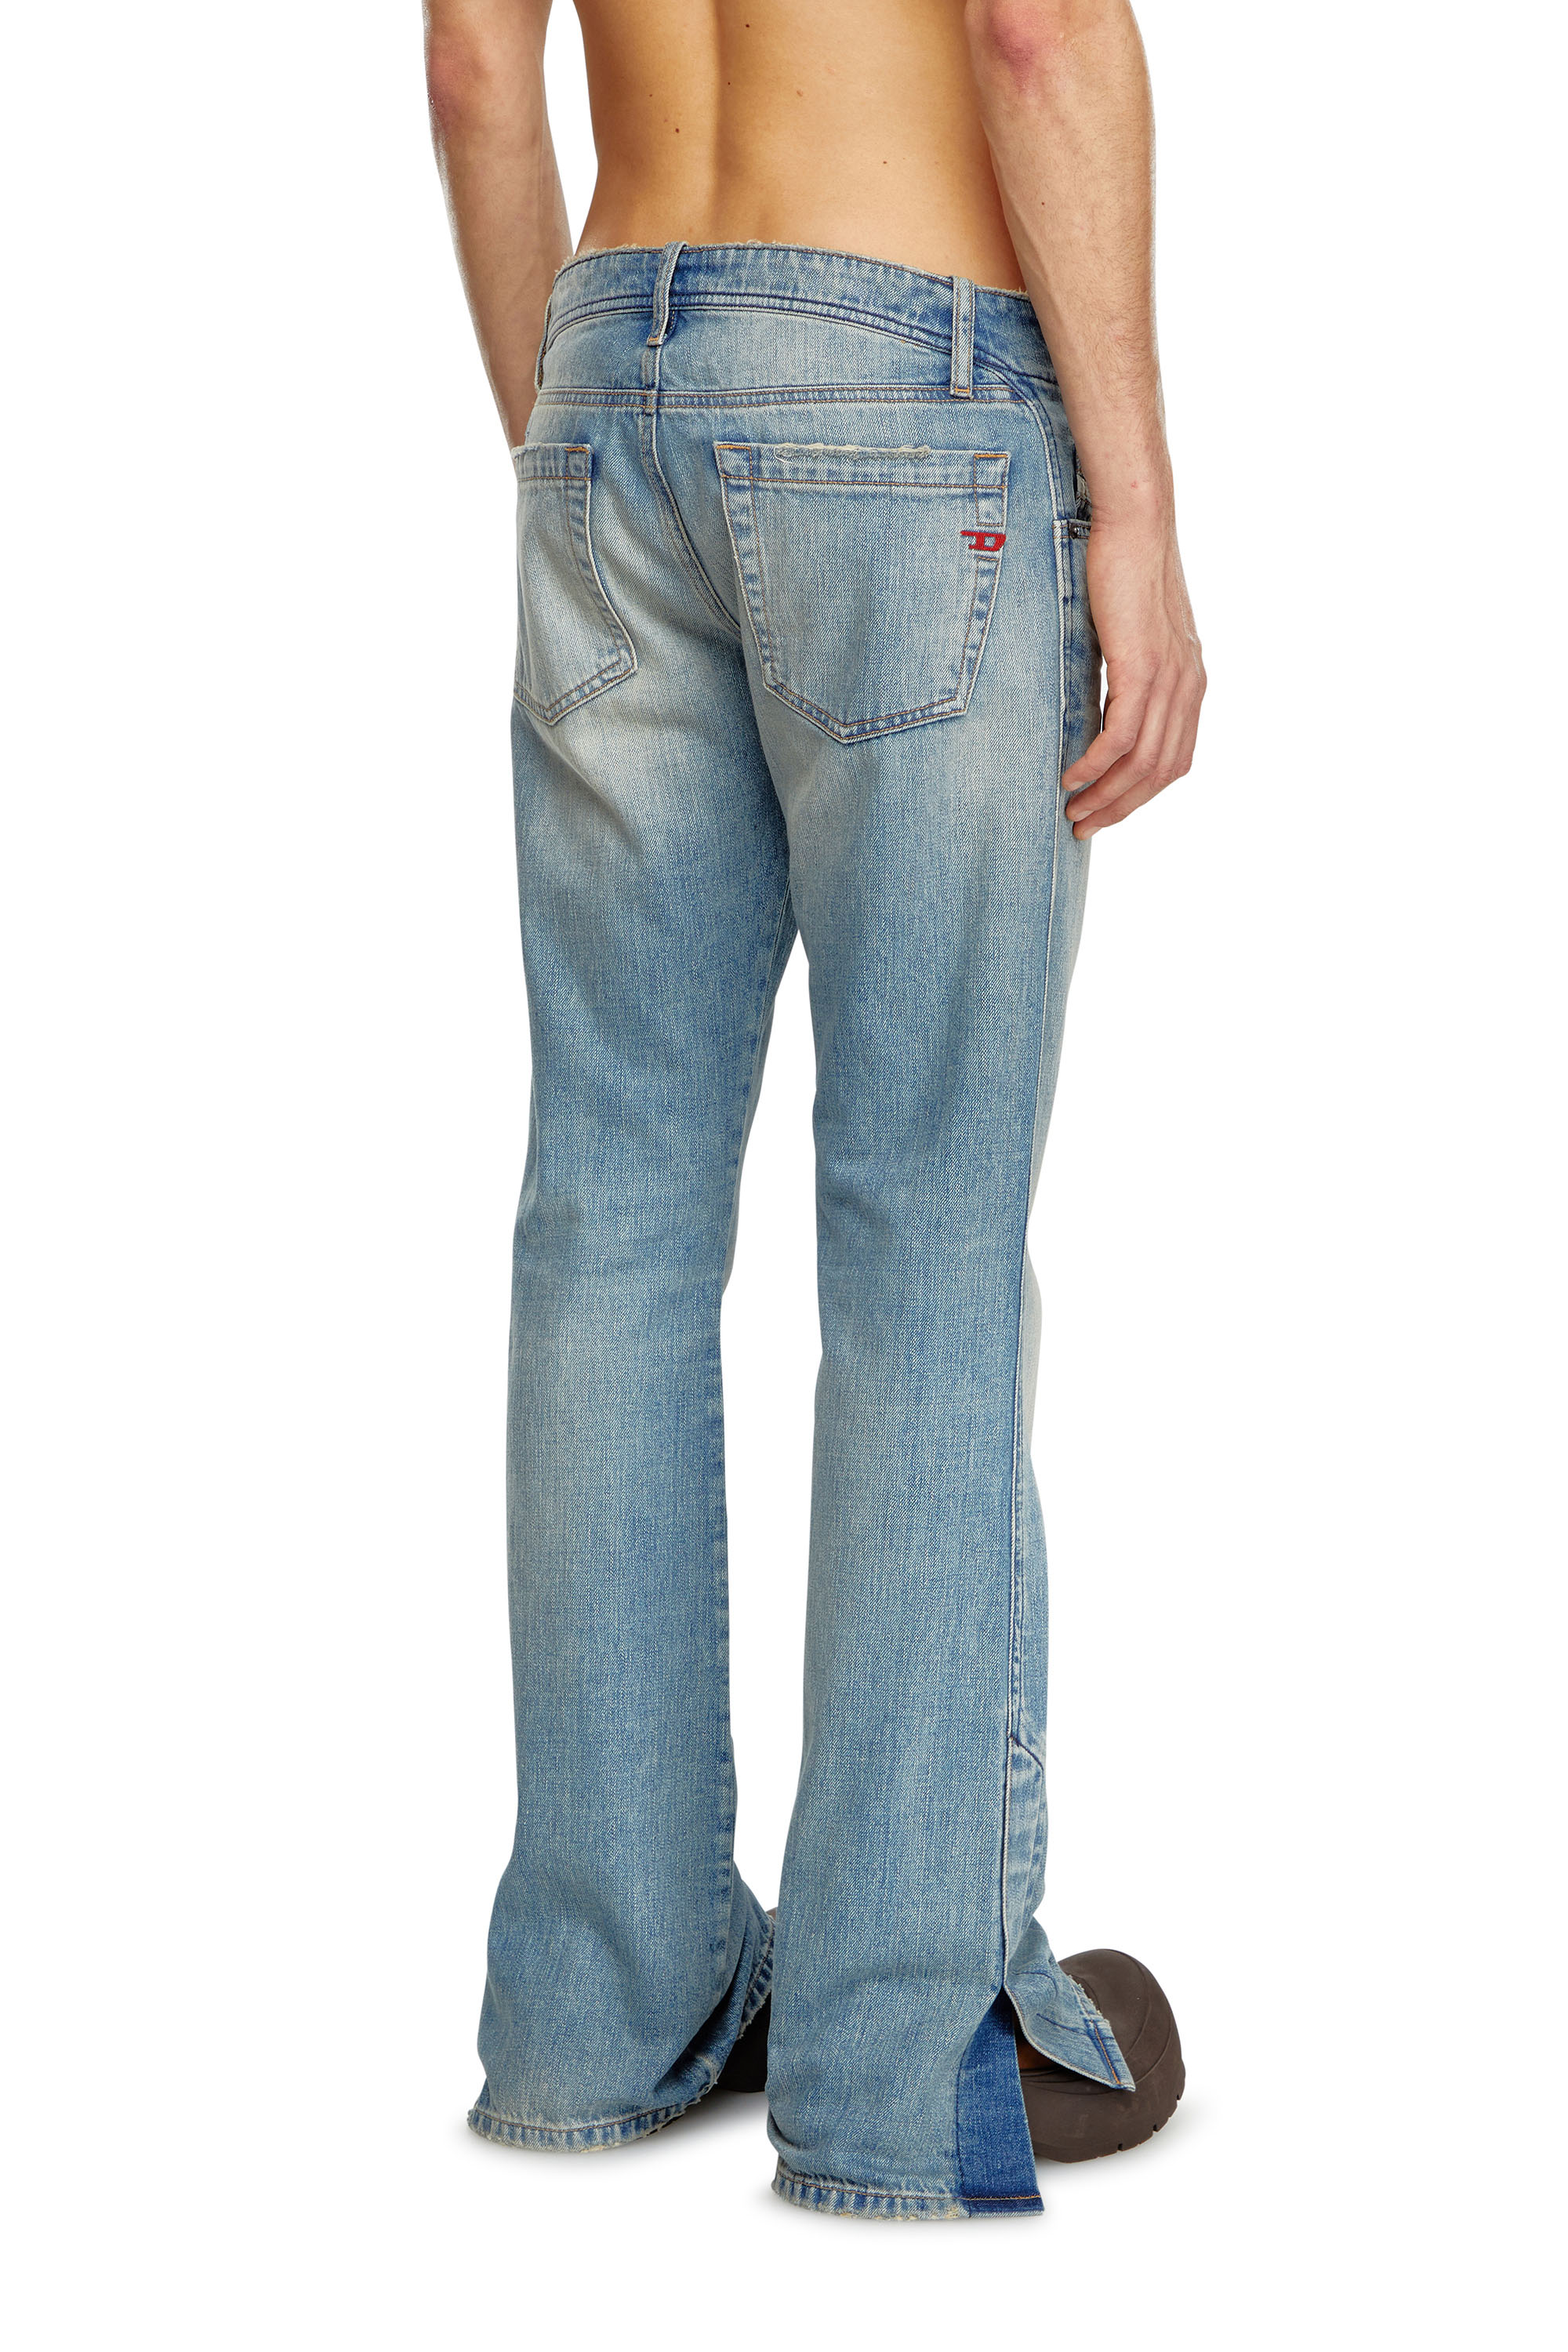 Diesel - Bootcut Jeans D-Backler 0GRDN, Hombre Bootcut Jeans - D-Backler in Azul marino - Image 3